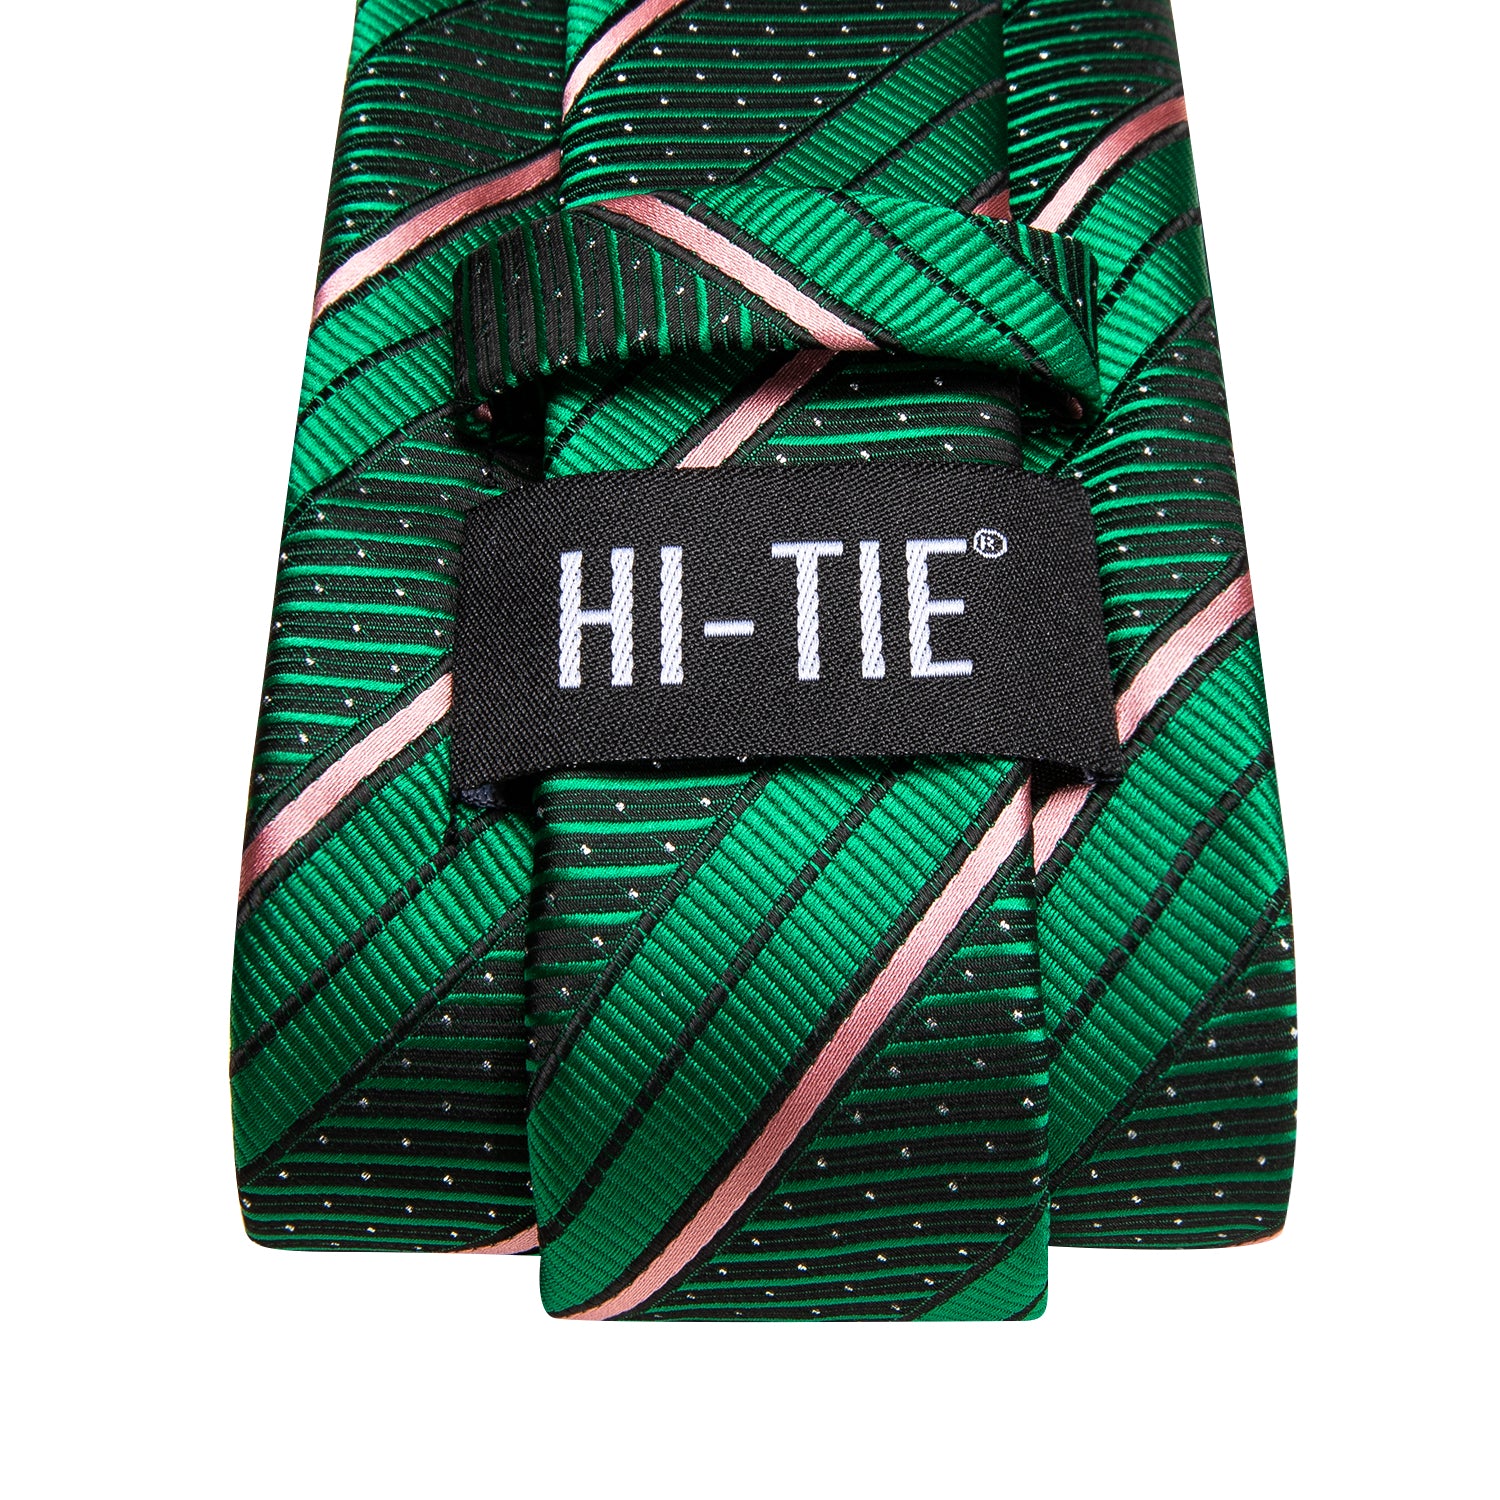 Green Pink Strip with White Dot Necktie Pocket Square Cufflinks Set